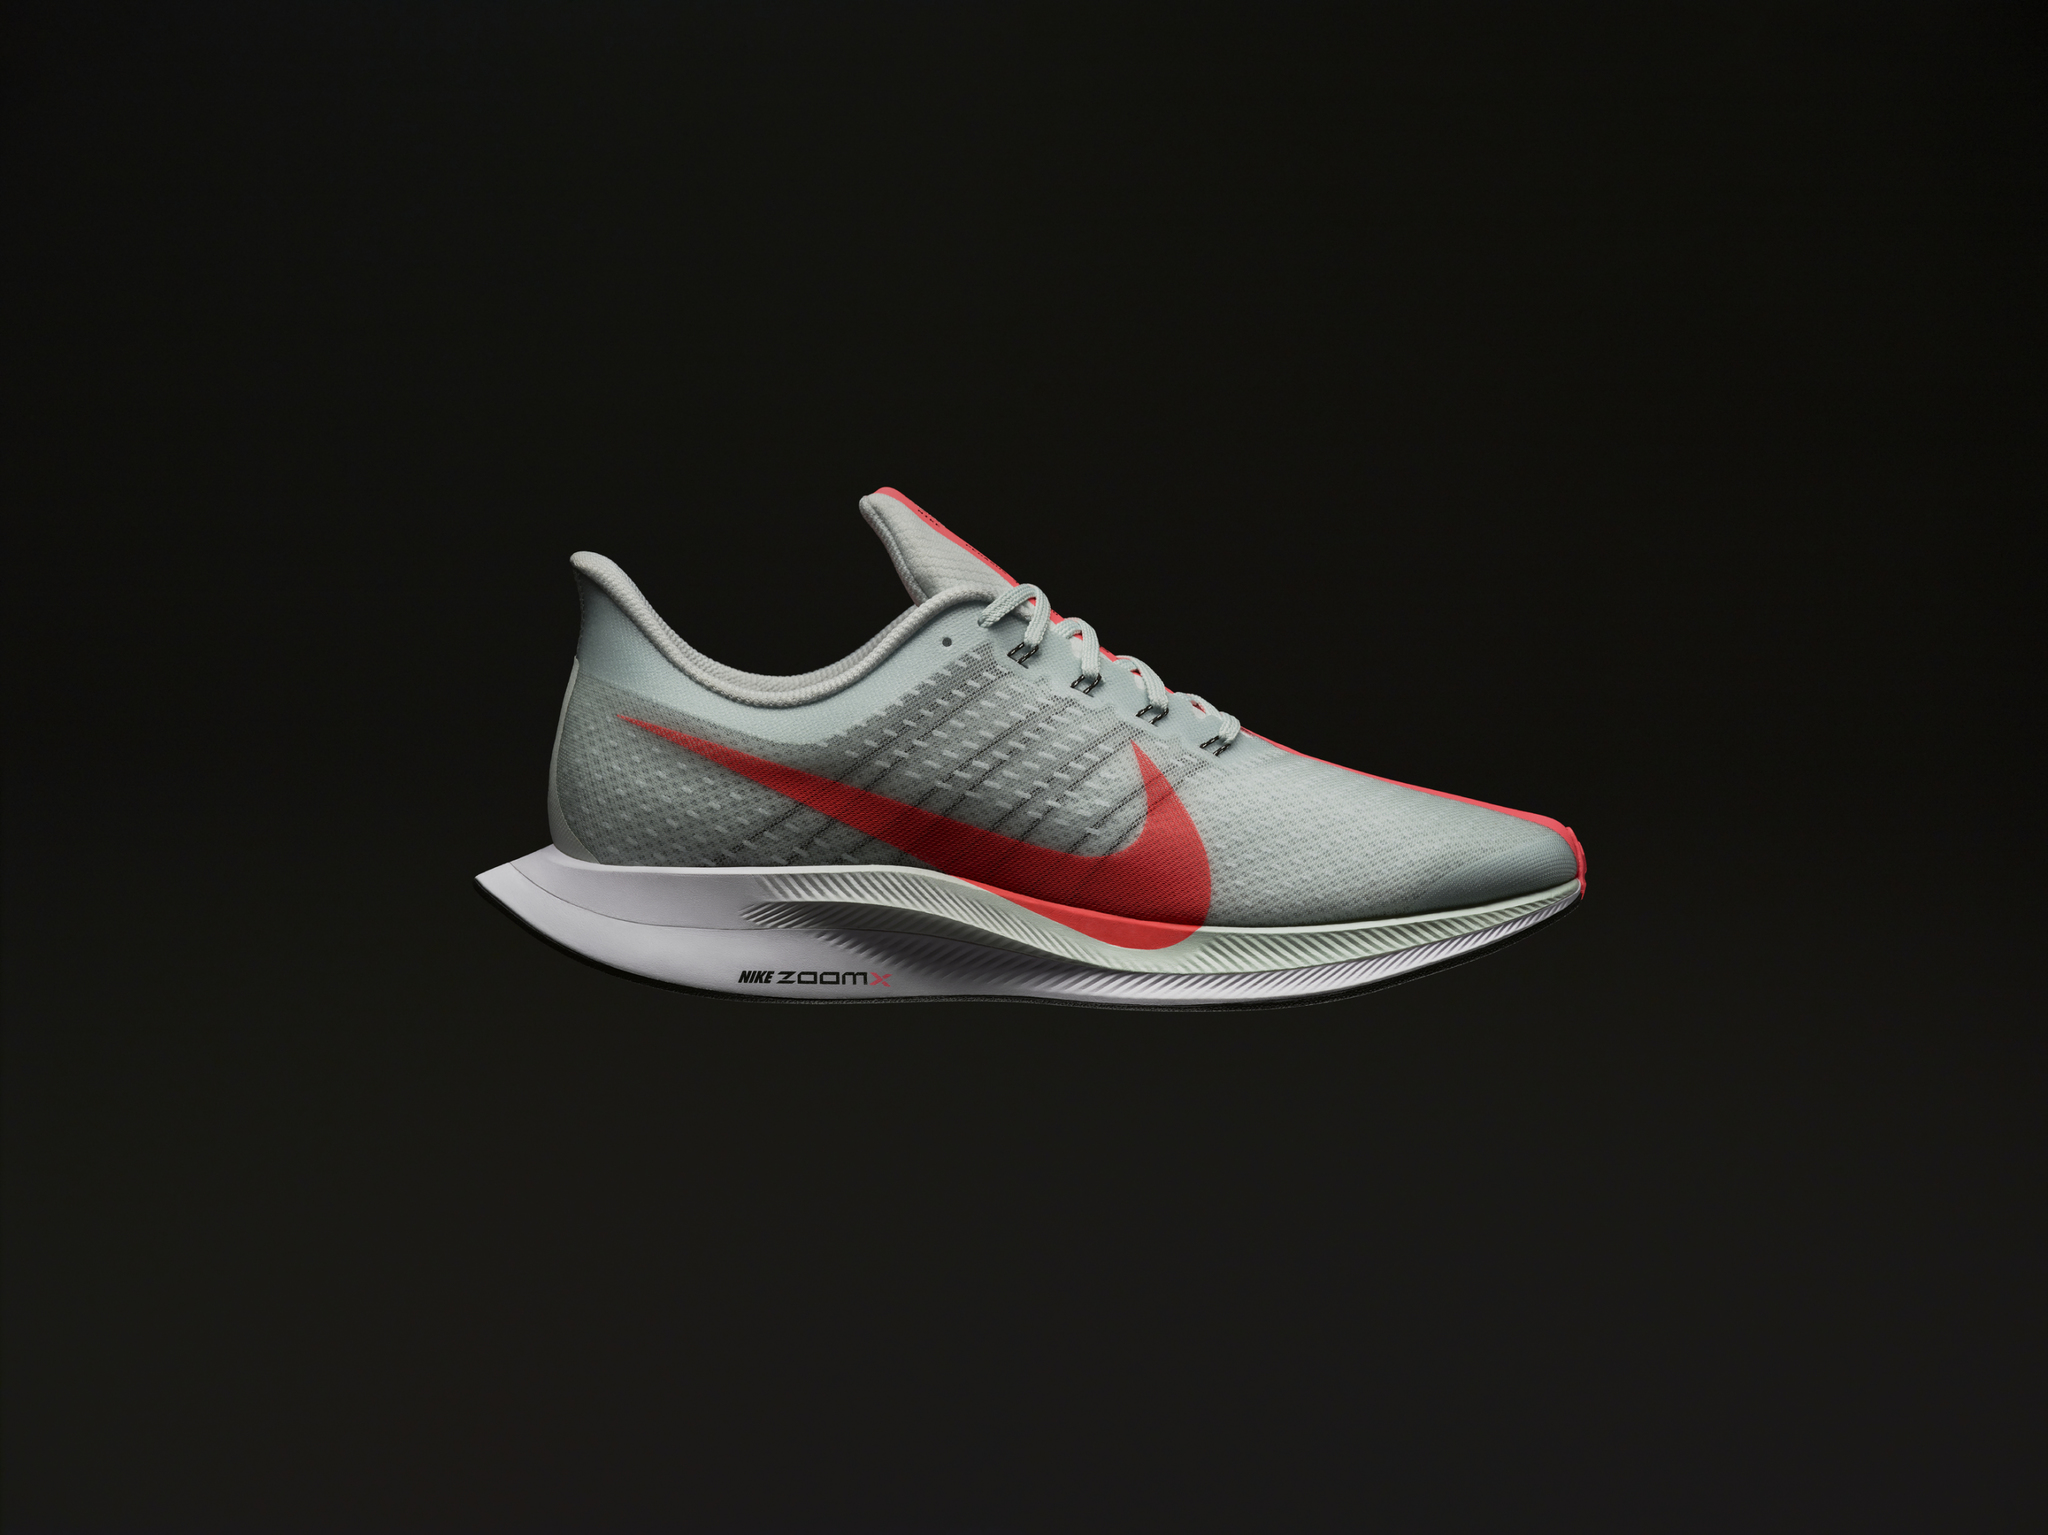 حذاء Zoom Pegasus Turbo الجديد من Nike